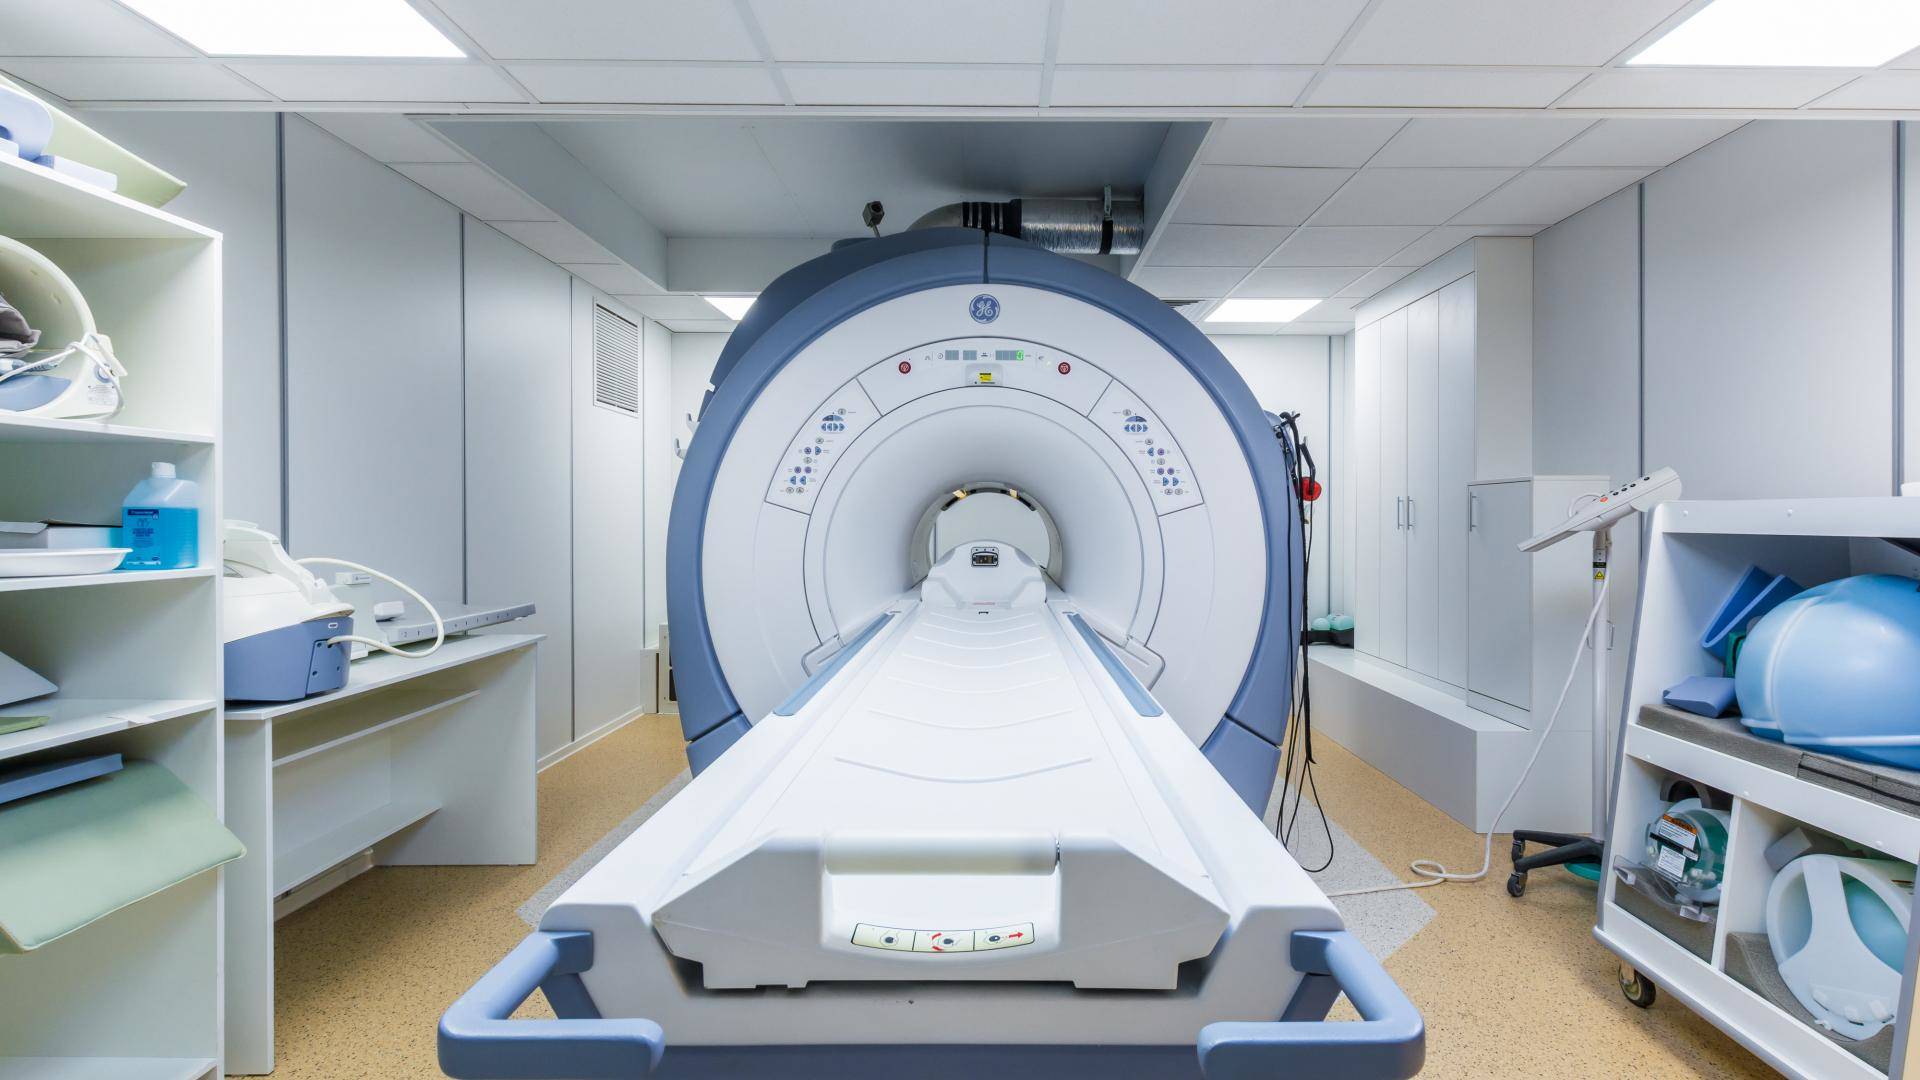 2022 年最佳 MRI 機器評級